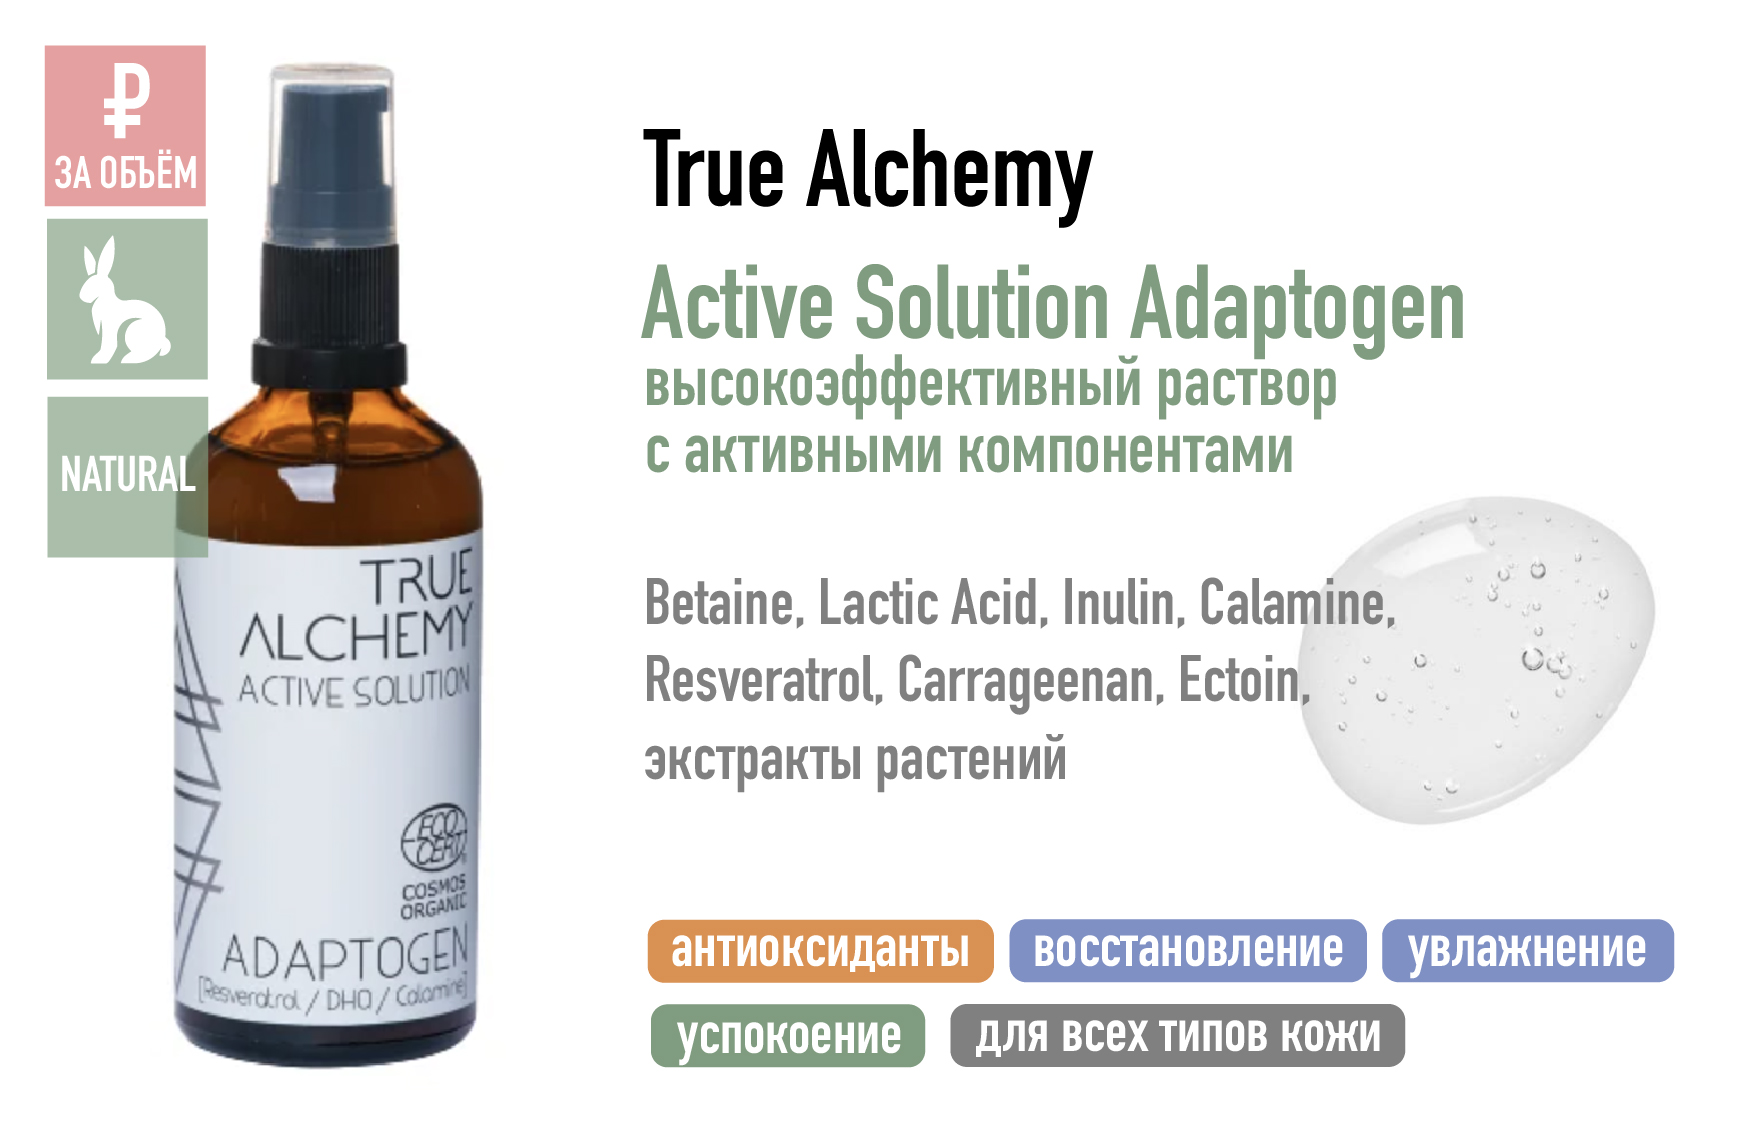 True Alchemy Active Solution Adaptogen / Высокоэффективный раствор с активными компонентами